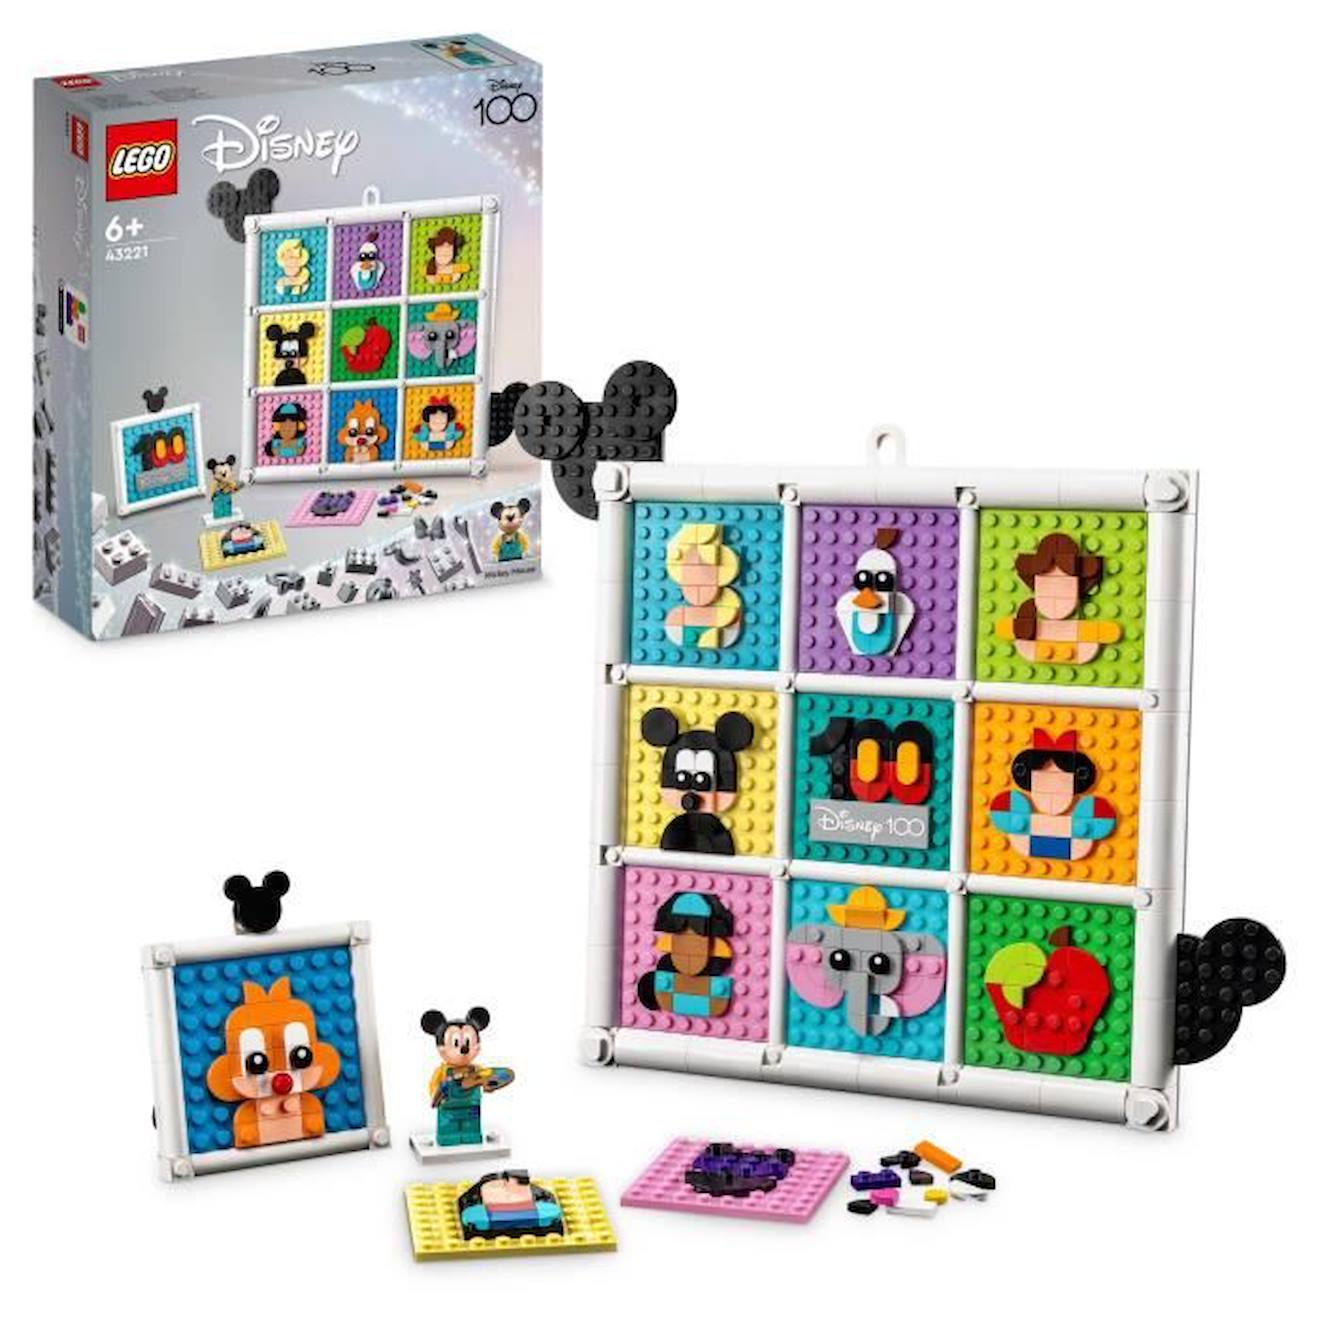 Lego® Disney 43221 100 Ans D'icônes Disney, Création D'art Mural Avec Mickey Mouse Pour Enfants Bleu